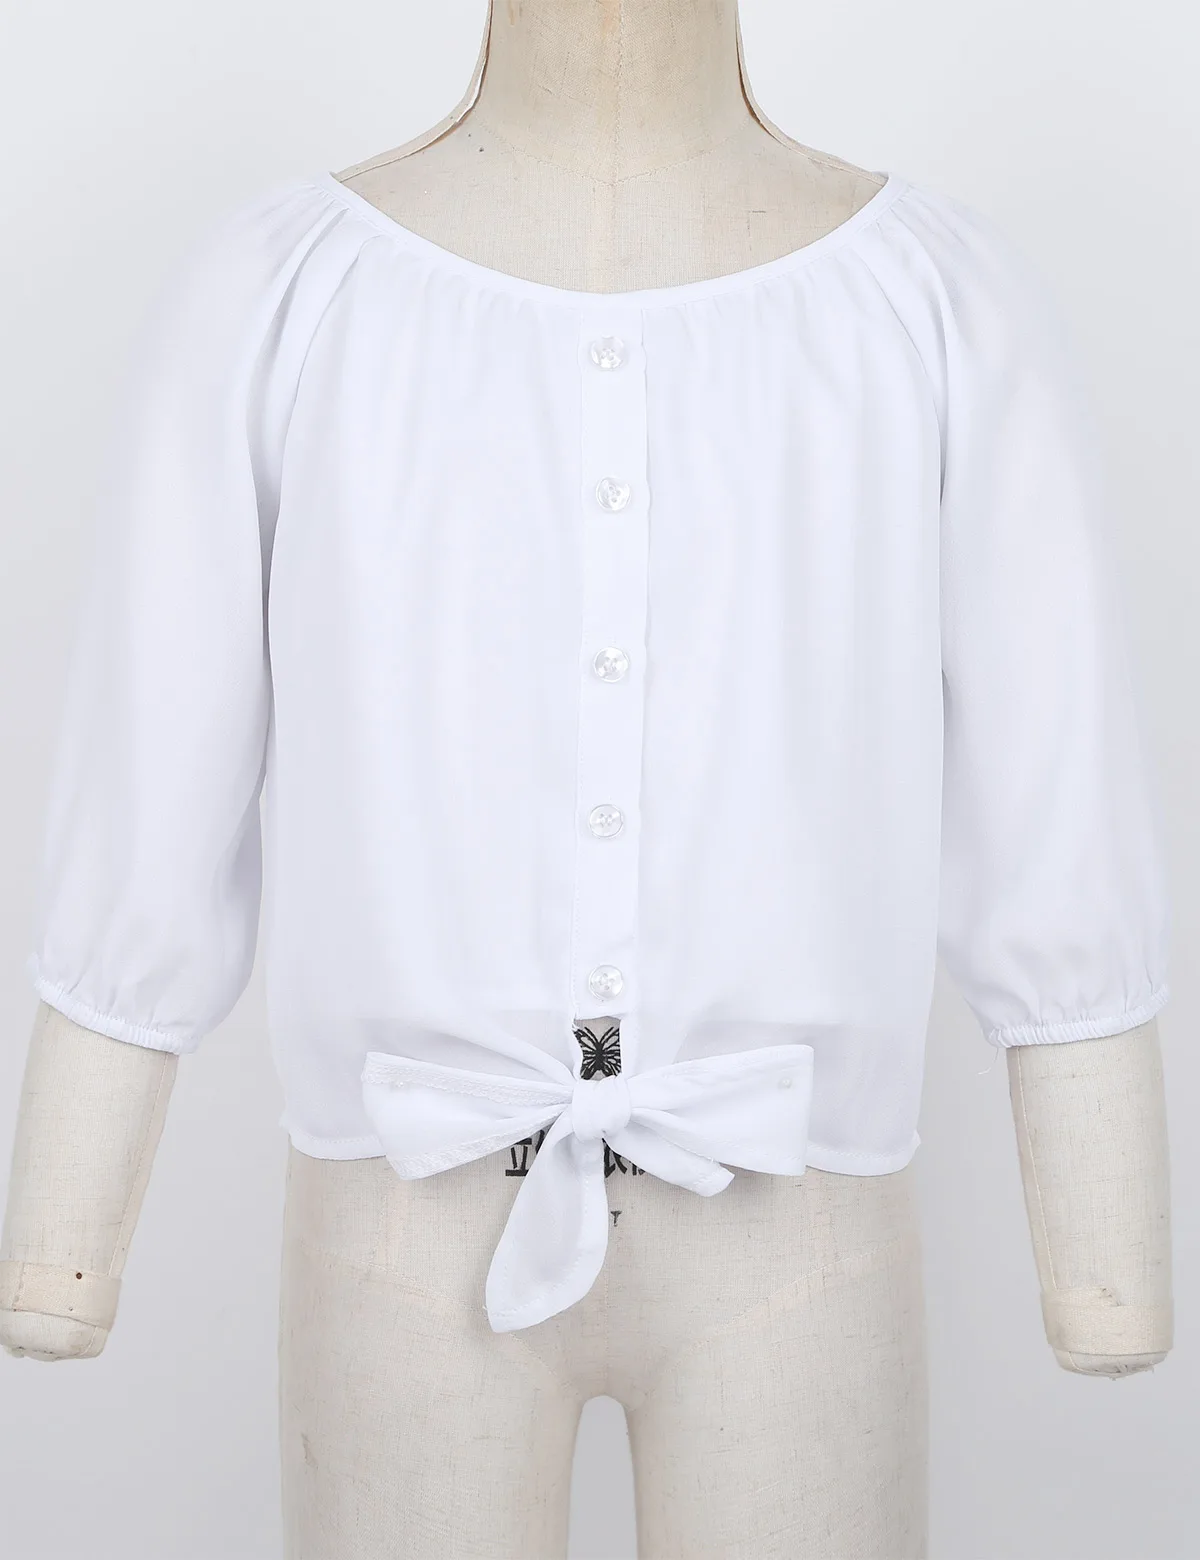 Весенне-осенняя шифоновая блузка для девочек-подростков белая повседневная одежда с рукавами 3/4 года рубашка для девочек на вечеринку топы для детей, детская одежда